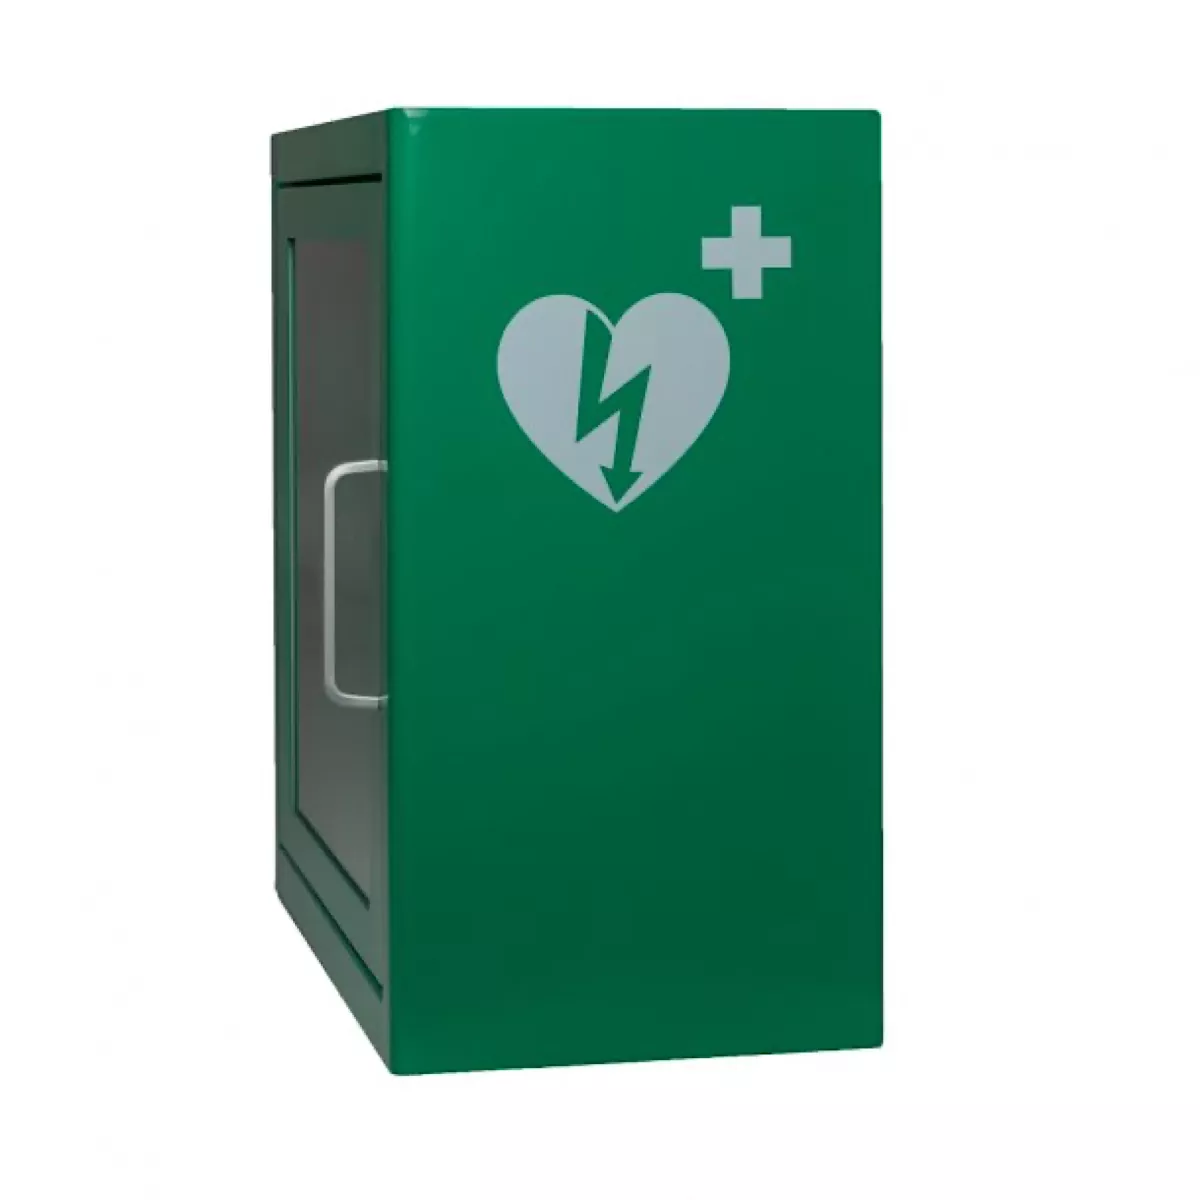 AED Wandkasten Standard für Innen, in grün, ARKY